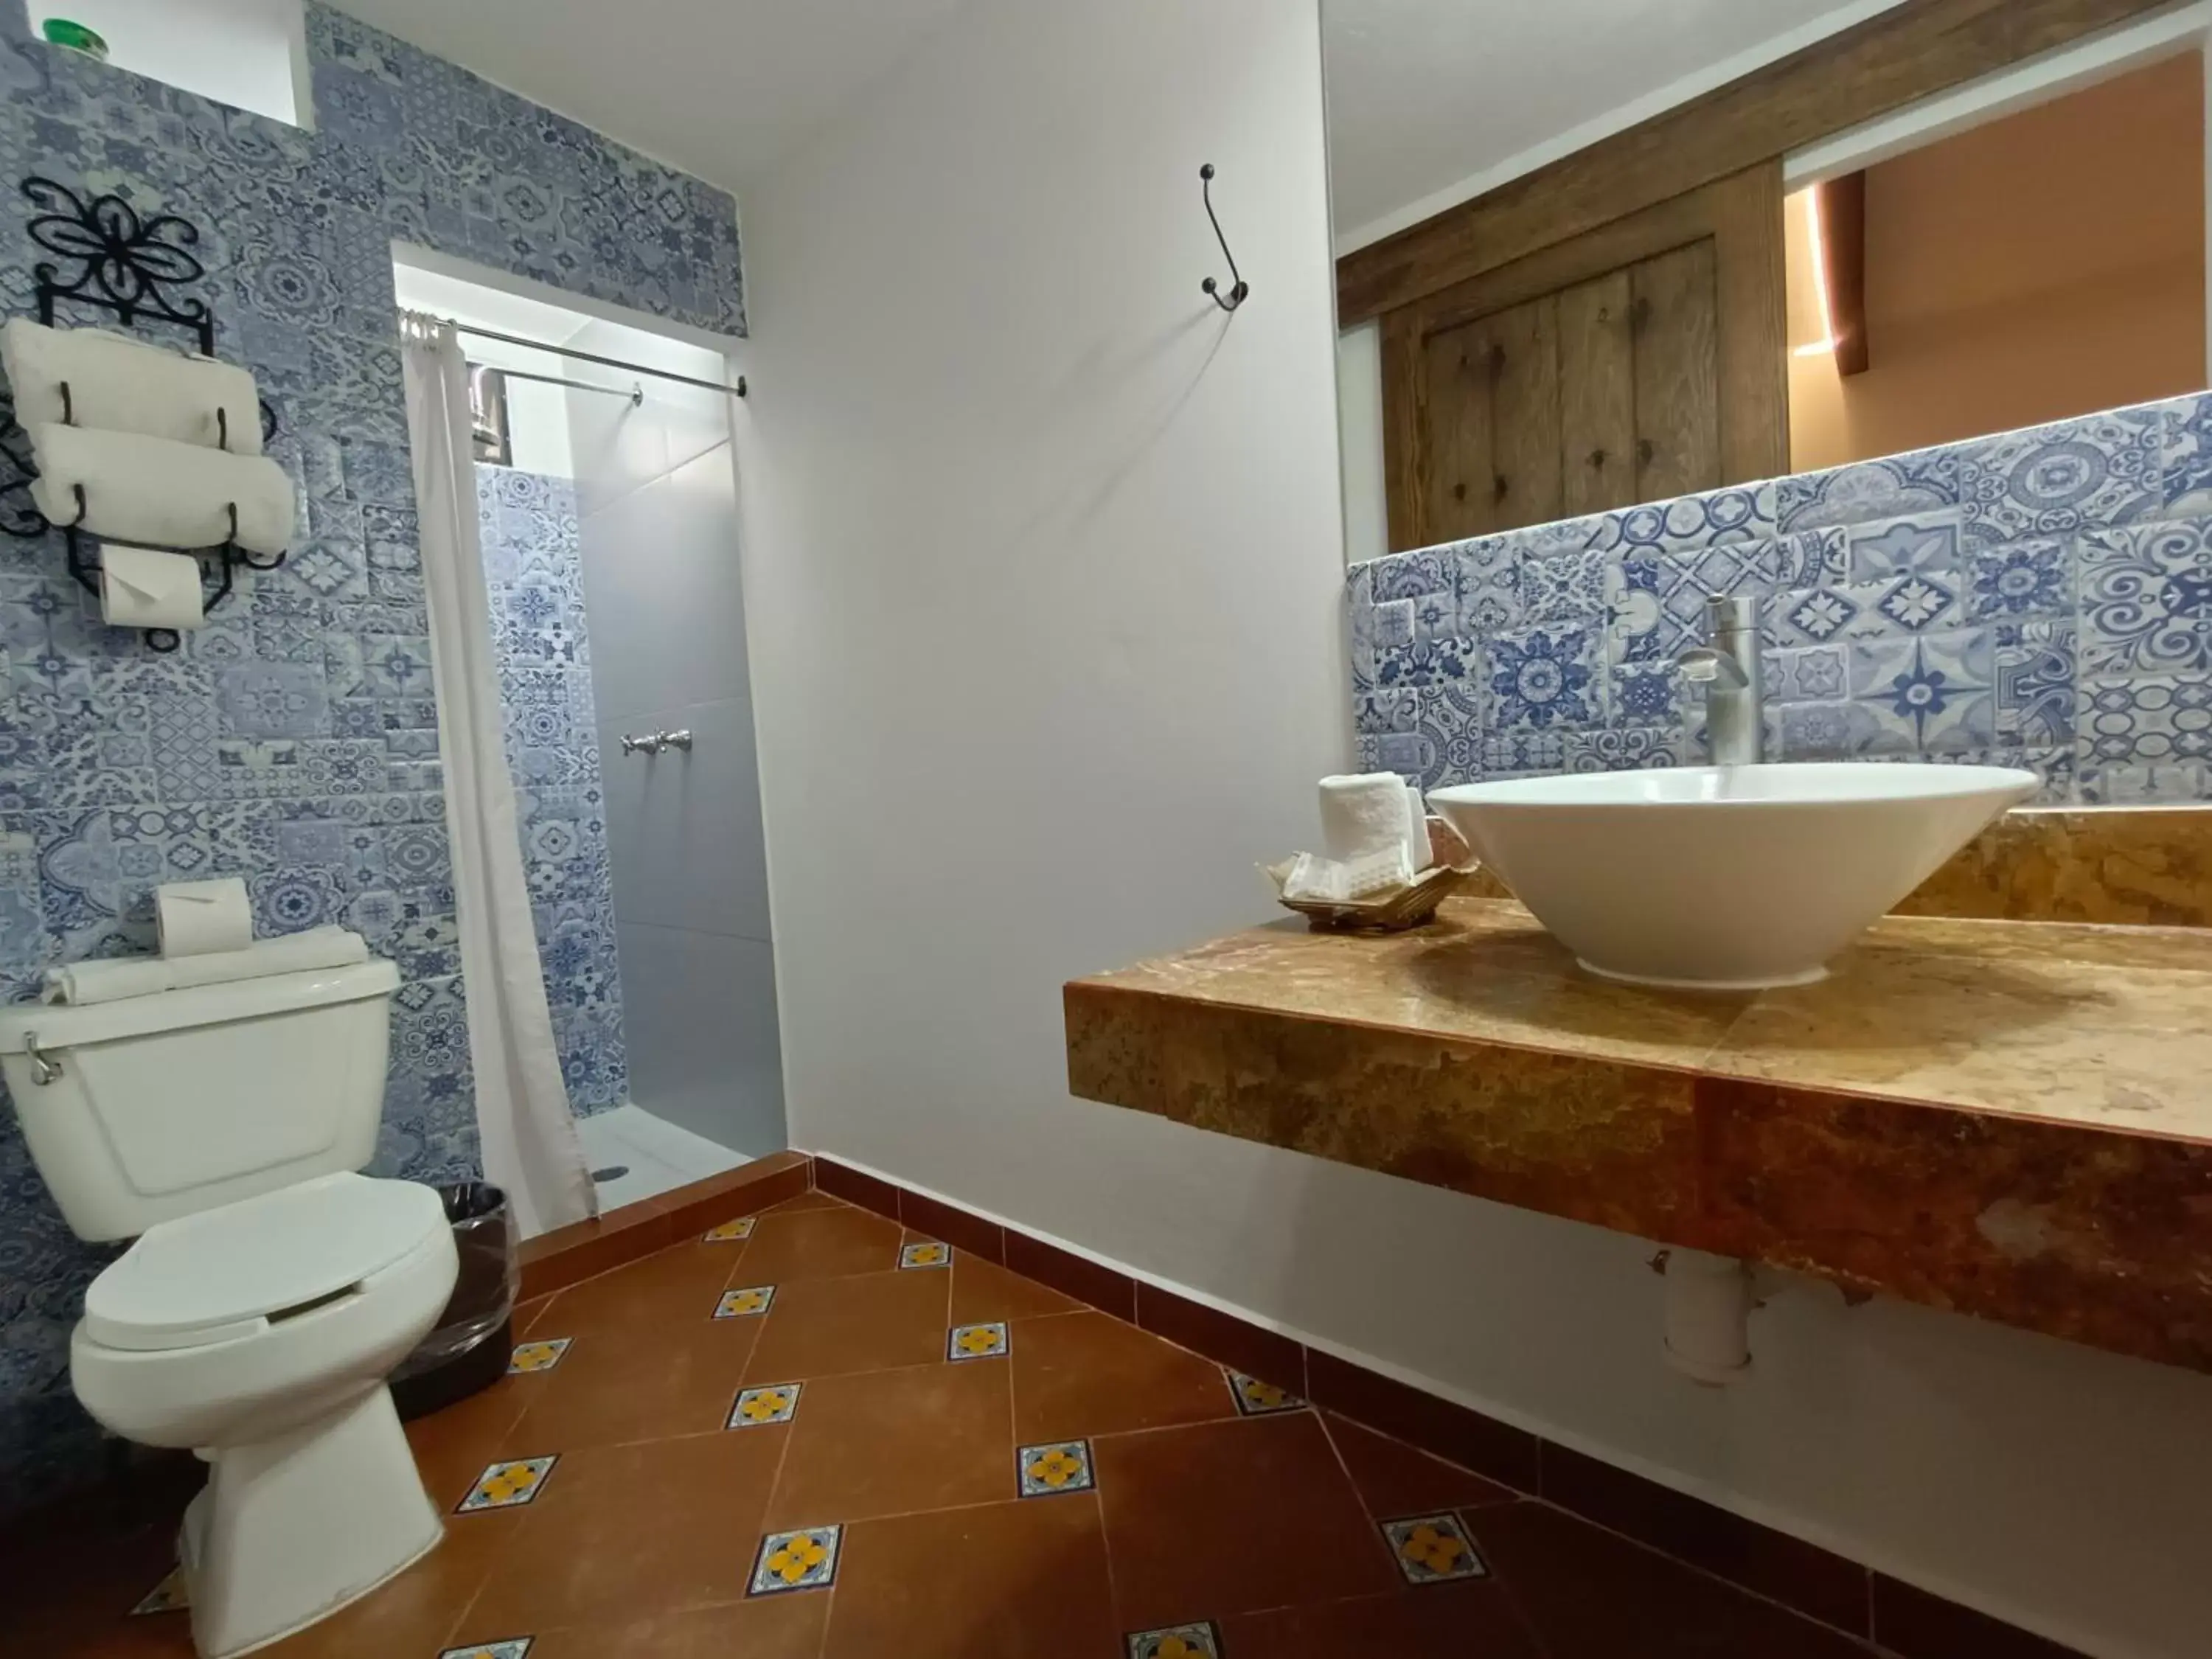 Bathroom in Hotel Hacienda Monteverde San Miguel de Allende